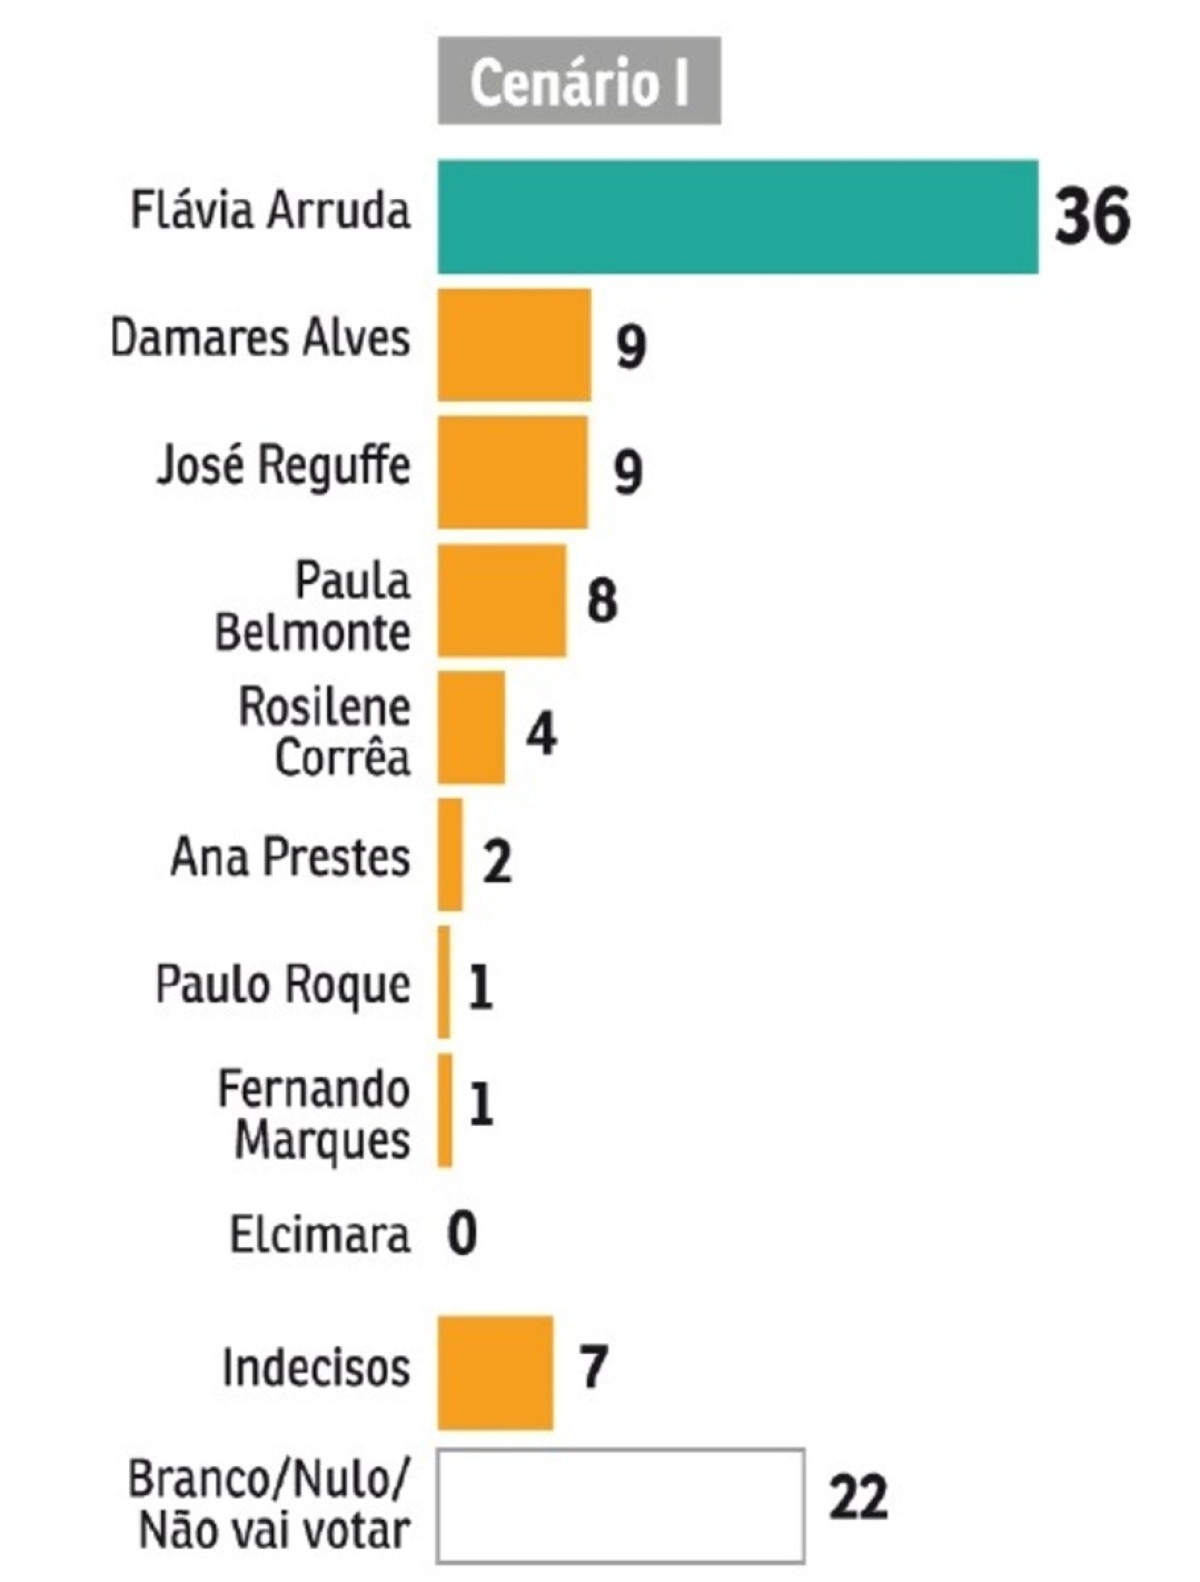 Flávia Arruda lidera com 36% dos votos neste cenário